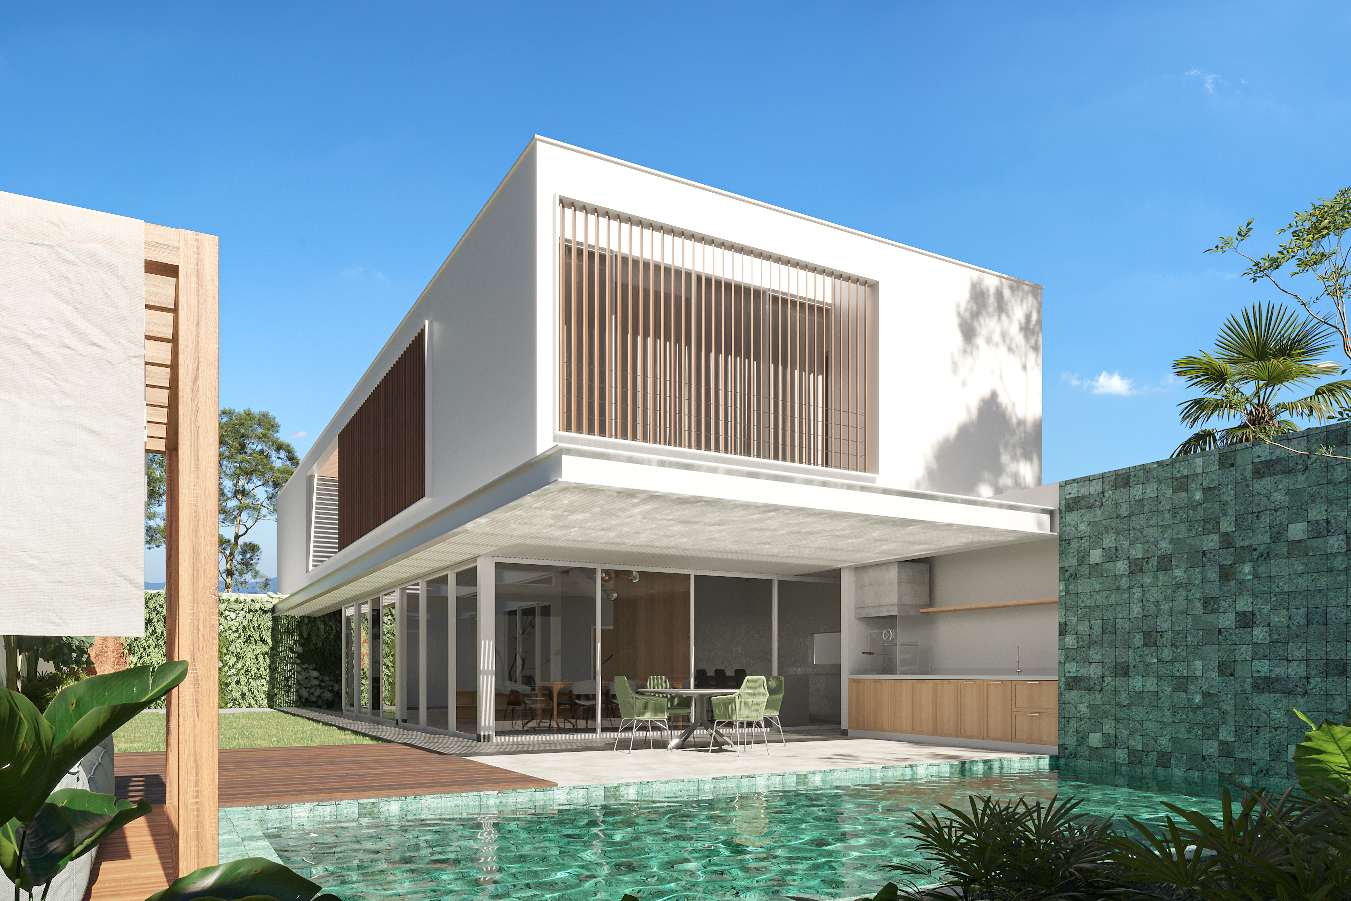 piscina vista dos fundos casa contemporanea fachadapedra natural, aço cortein madeira paisagismo tropical marajoara jundiaí